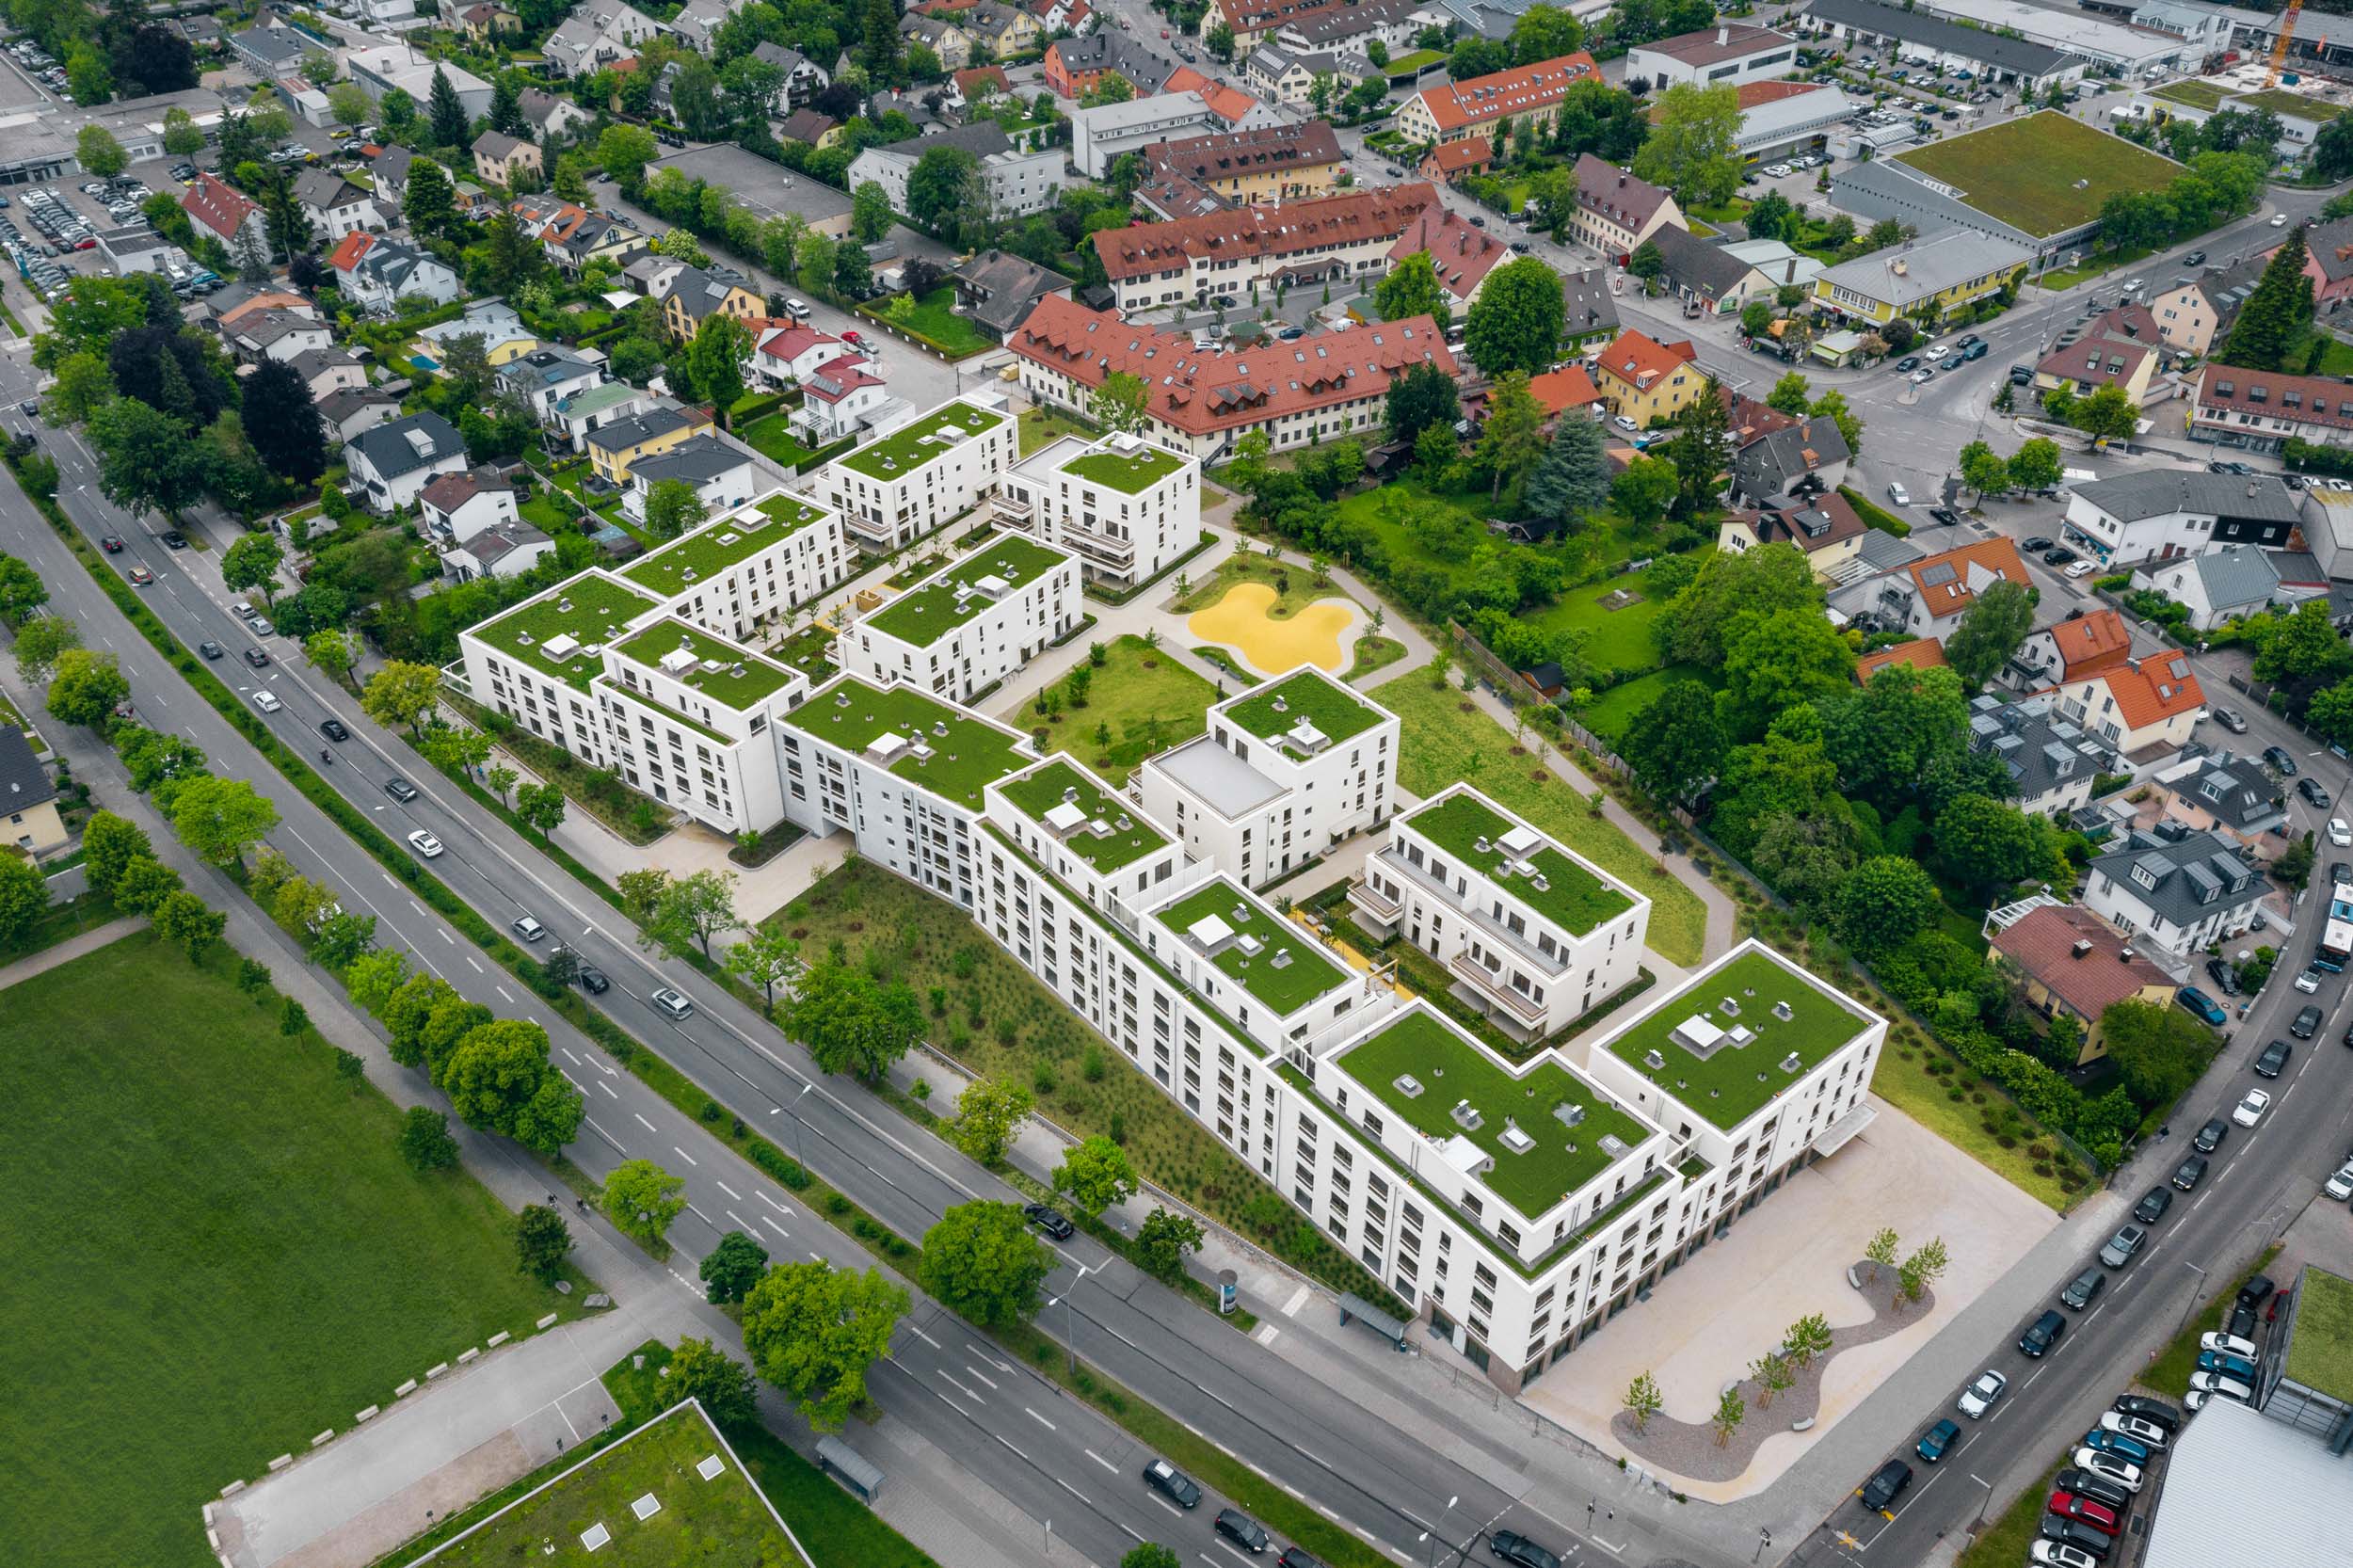 Gustav-Epple-Bauunternehmung-Tru-Living-München-Wohnbau-2020-TruLiving_DJI_0728#00